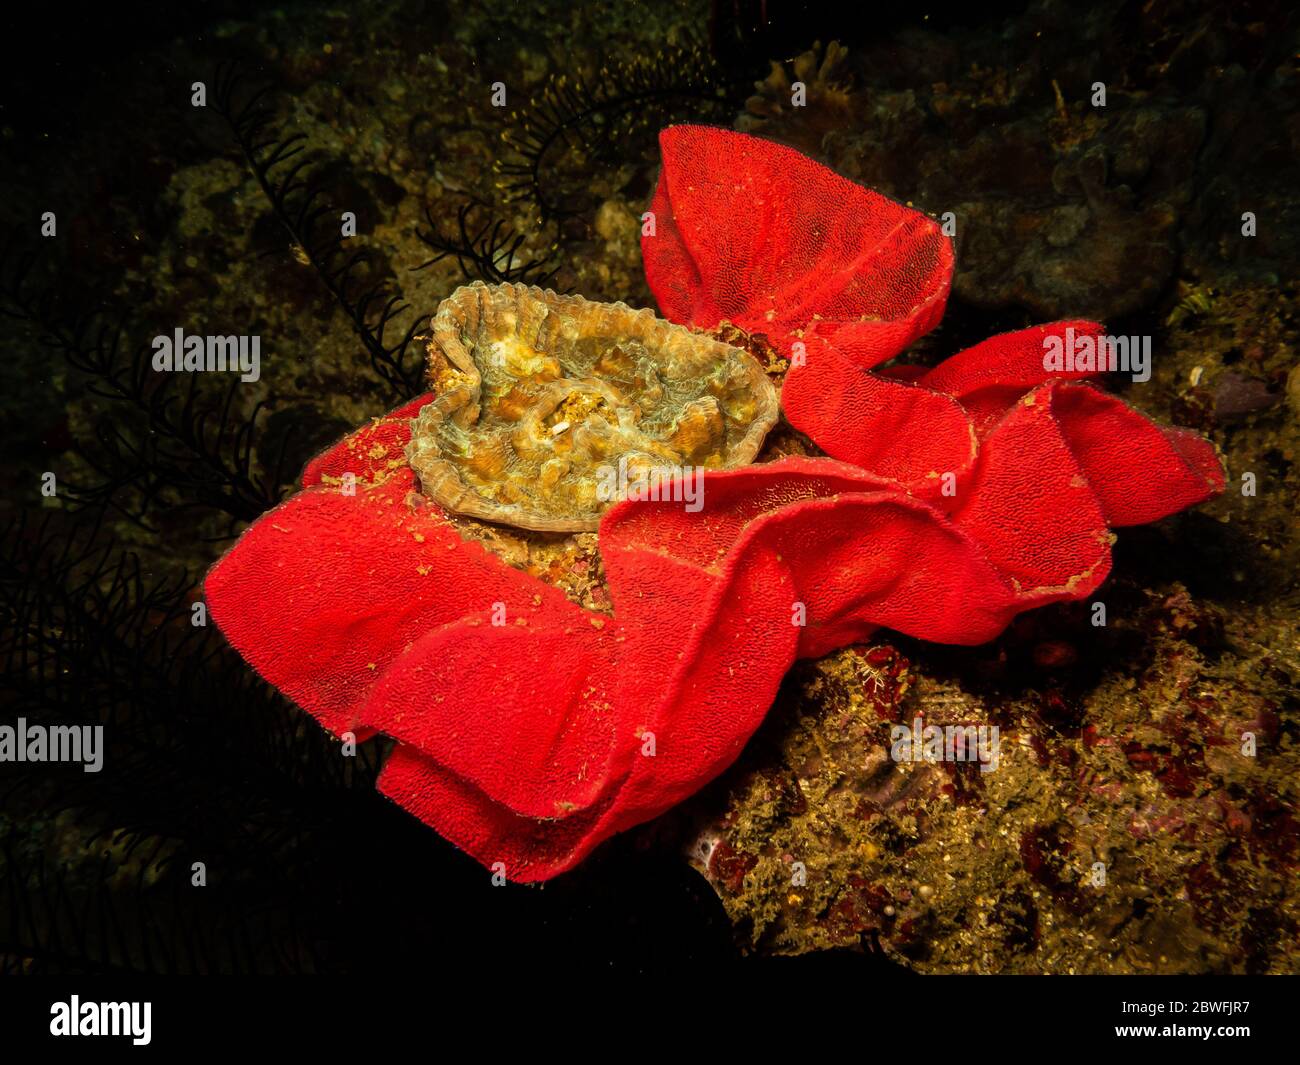 Uova di nudiranch a forma di rosa in una barriera corallina di Puerto Galera nelle Filippine. Queste barriere coralline hanno una biodiversità eccezionale, sana e piena di vita Foto Stock